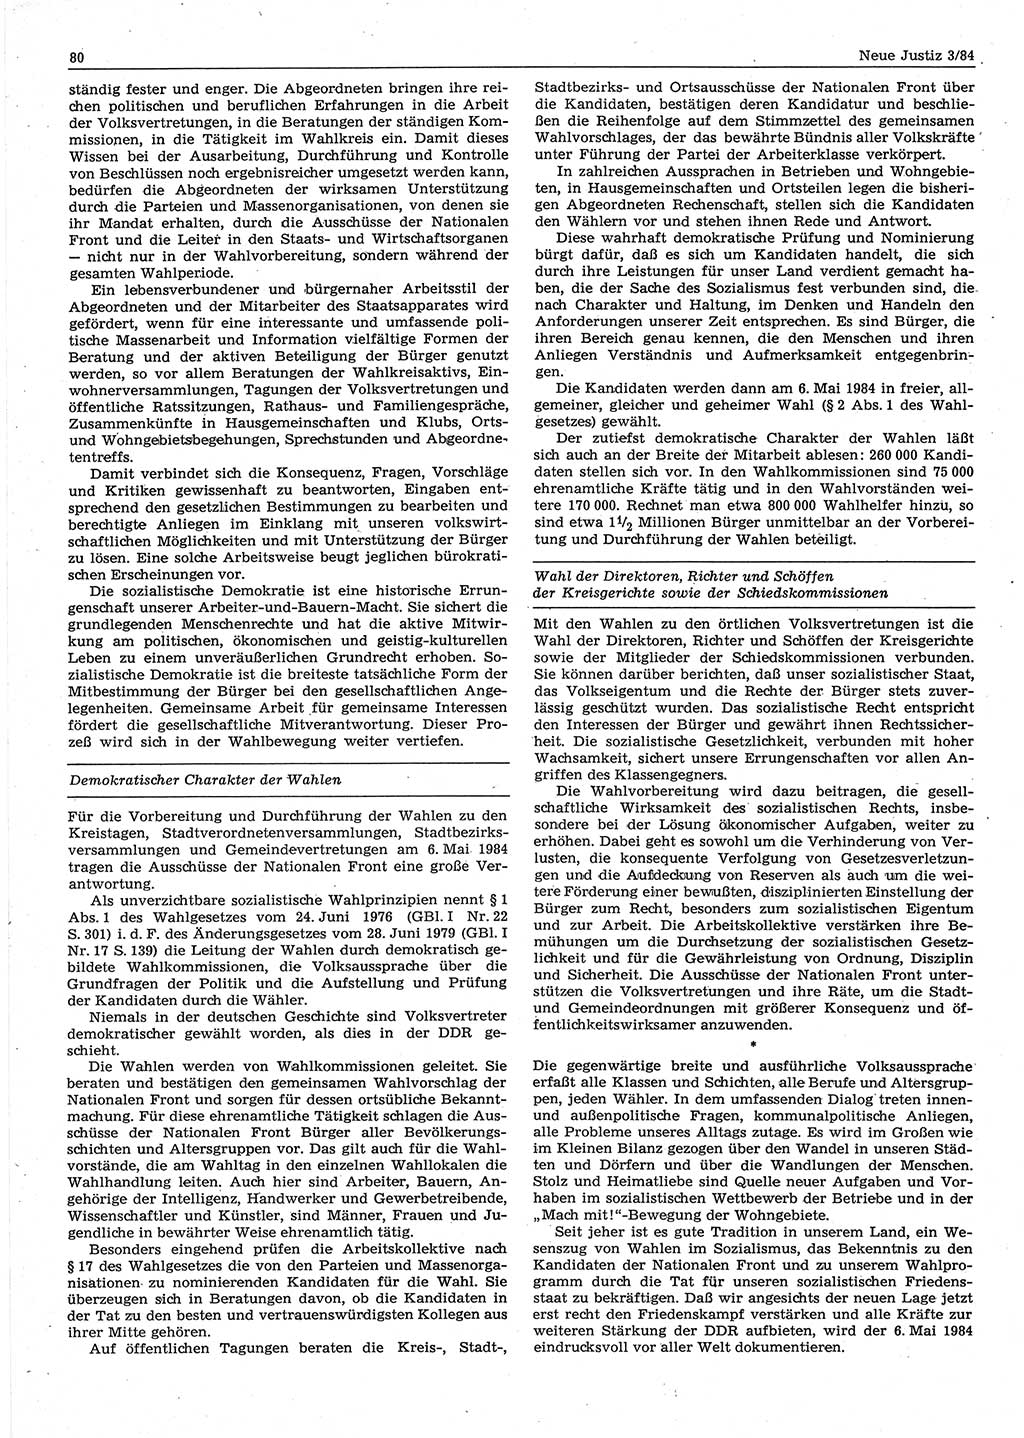 Neue Justiz (NJ), Zeitschrift für sozialistisches Recht und Gesetzlichkeit [Deutsche Demokratische Republik (DDR)], 38. Jahrgang 1984, Seite 80 (NJ DDR 1984, S. 80)